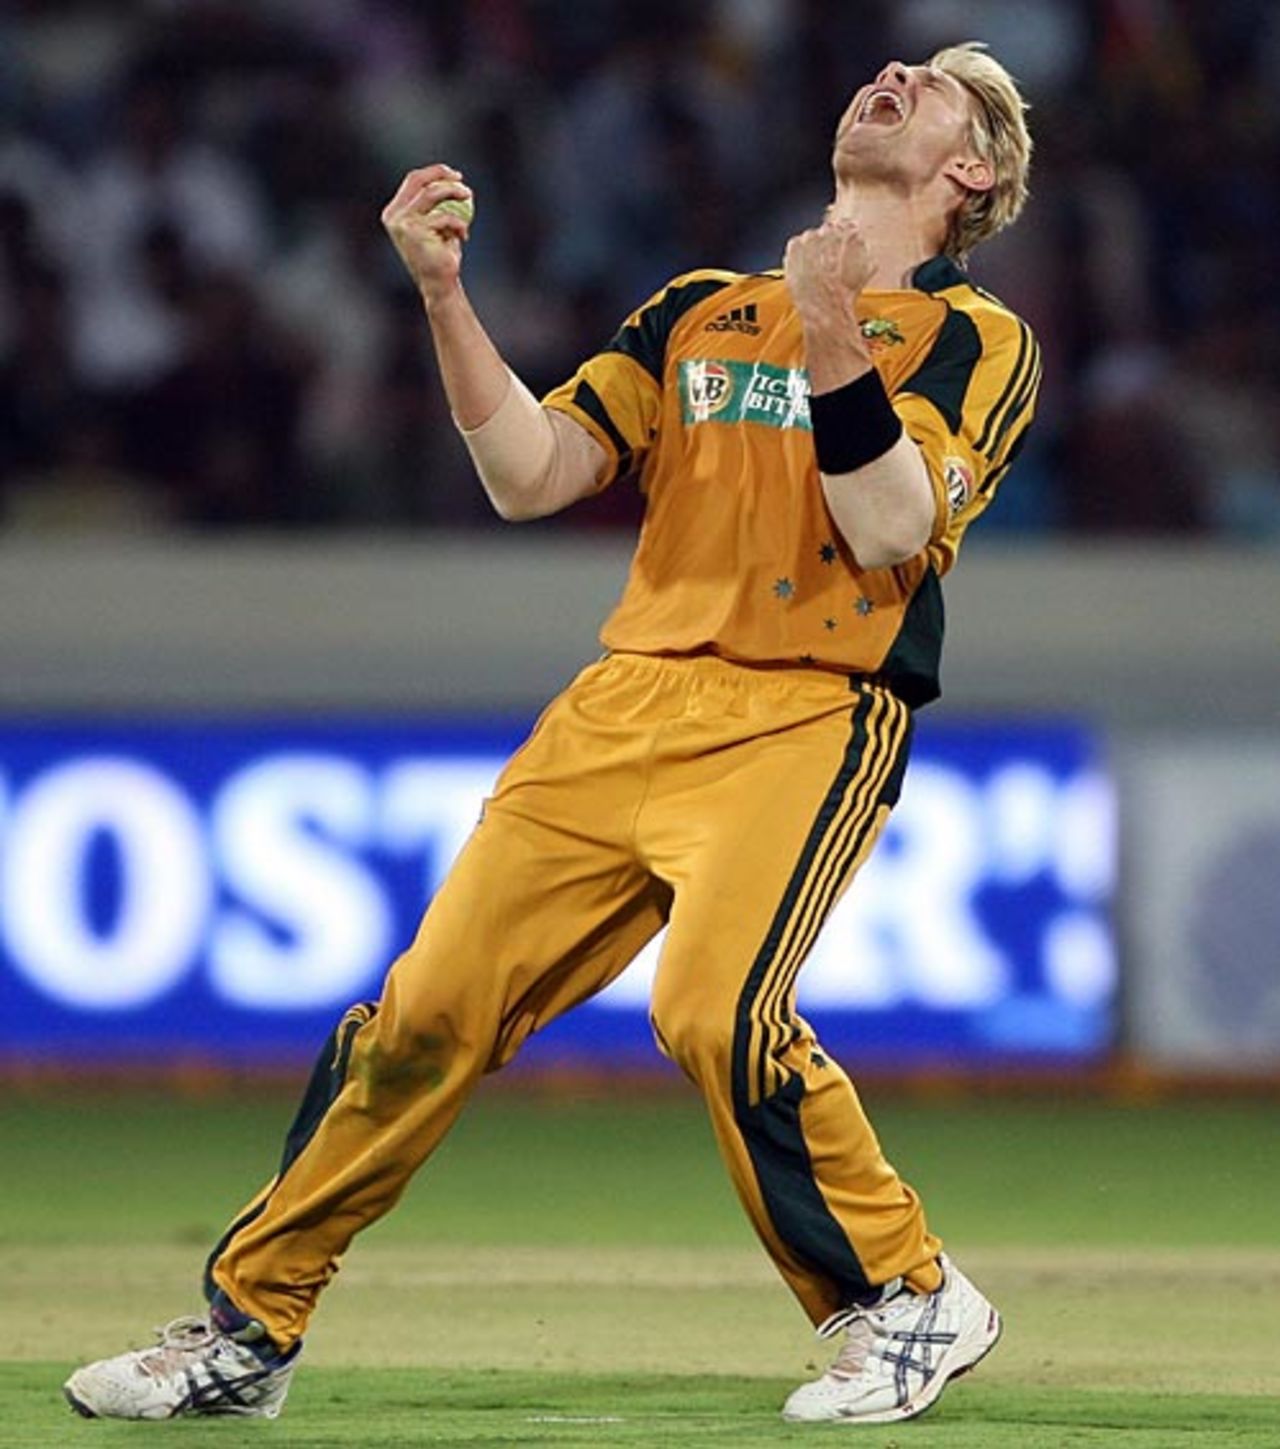 Shane Watson celebrates Yuvraj Singh's wicket, India v Australia, 5th ODI, Hyderabad, November 5, 2009